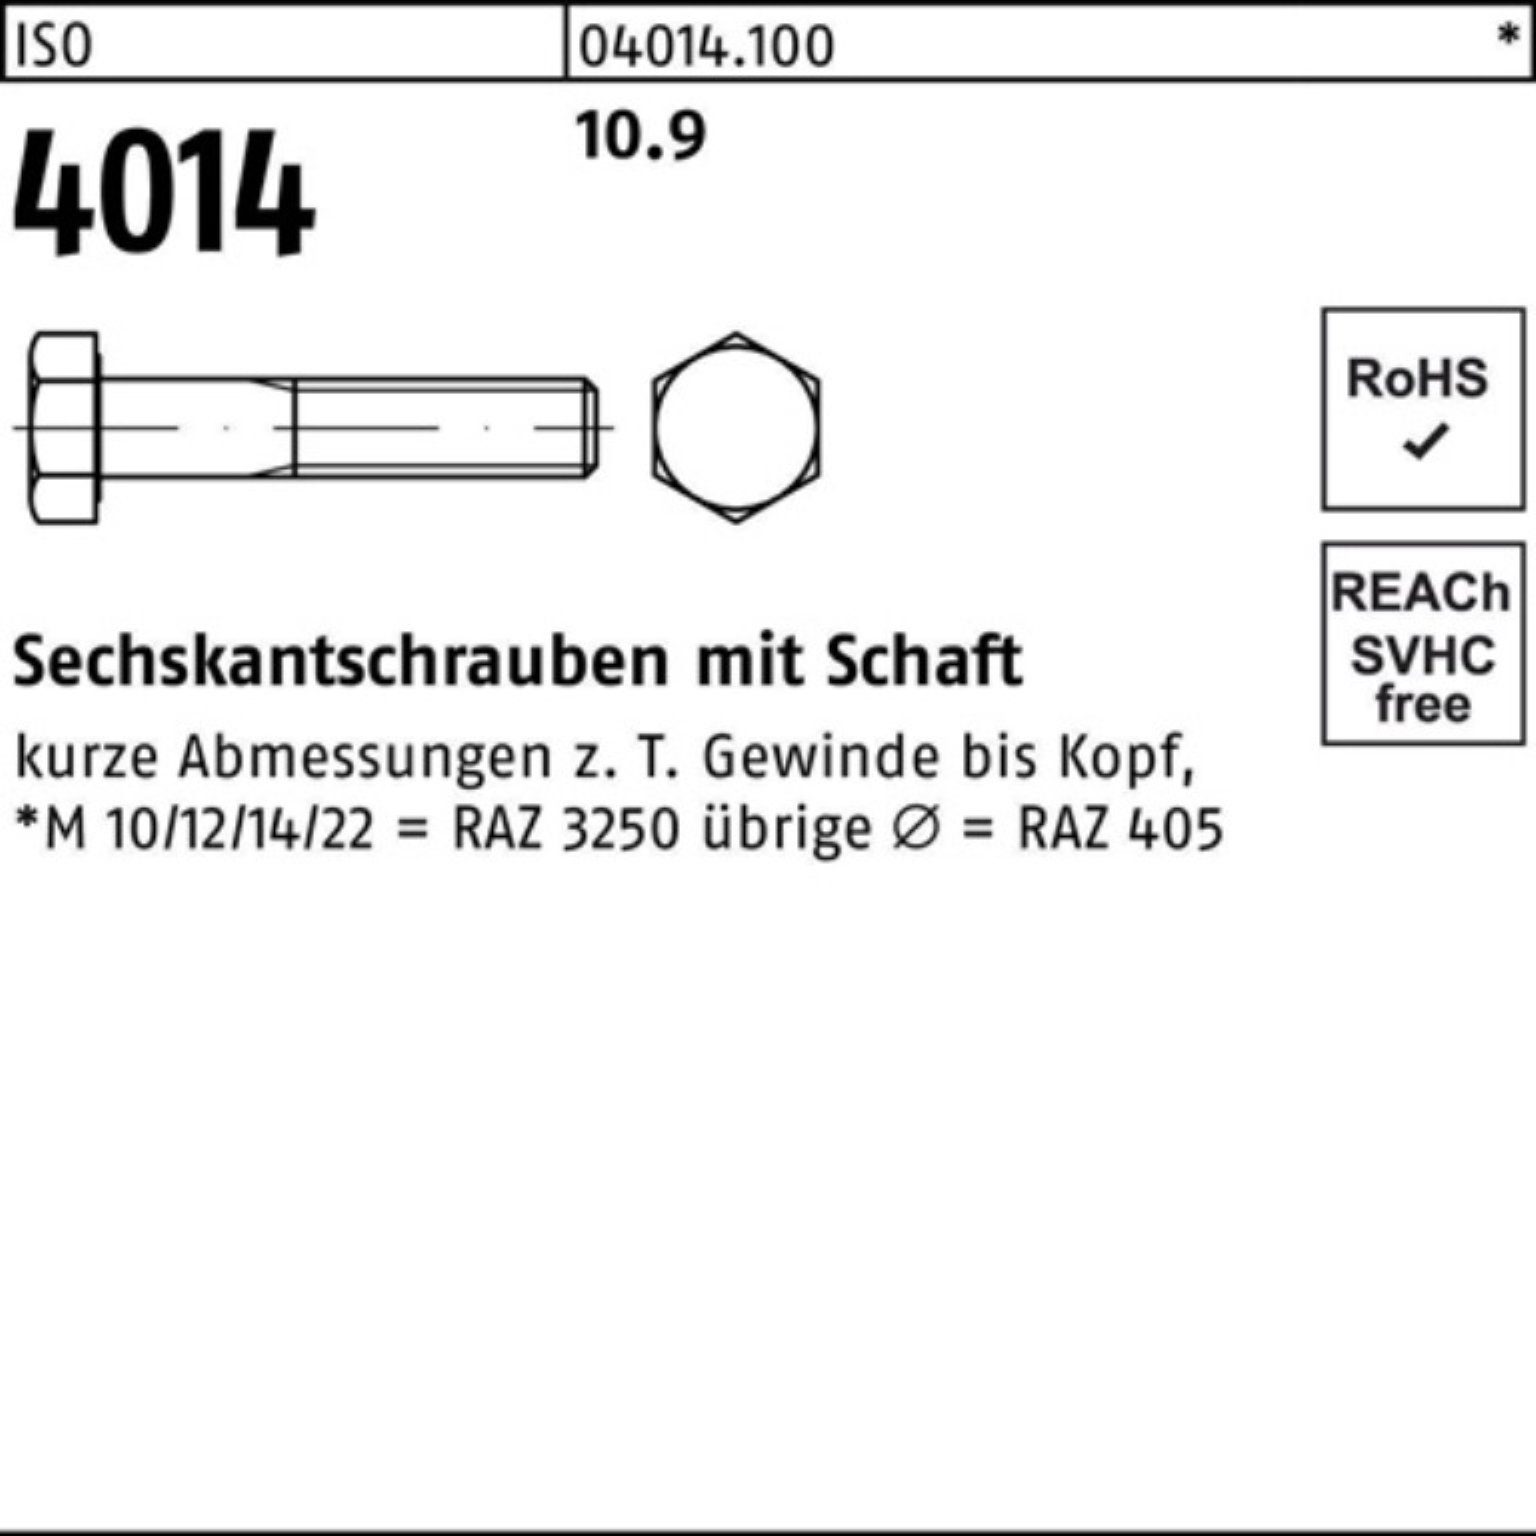 Bufab Sechskantschraube 290 10.9 IS 1 Sechskantschraube Pack ISO Stück M27x 4014 100er Schaft